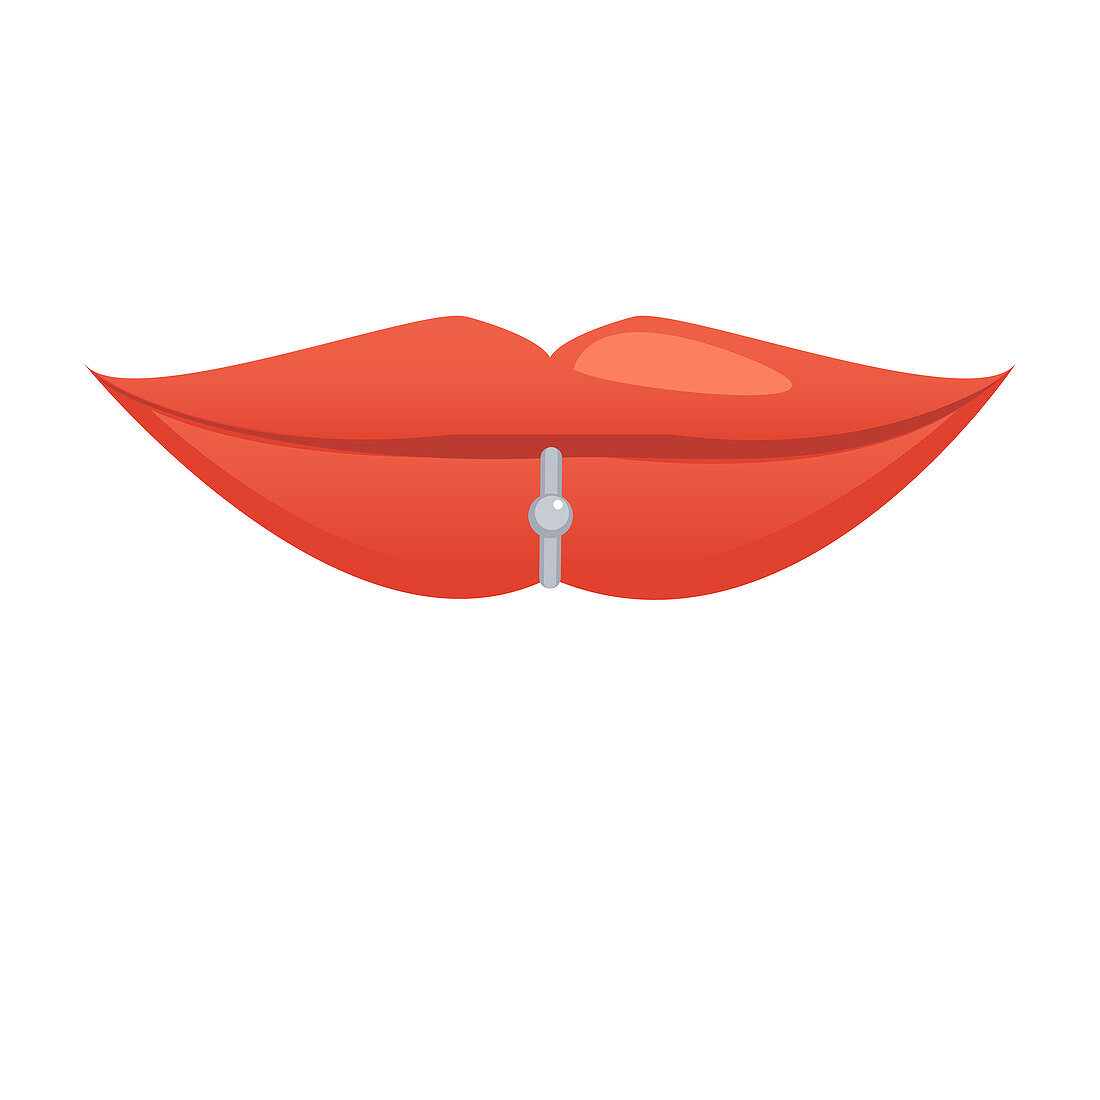 Lip piercing, illustration